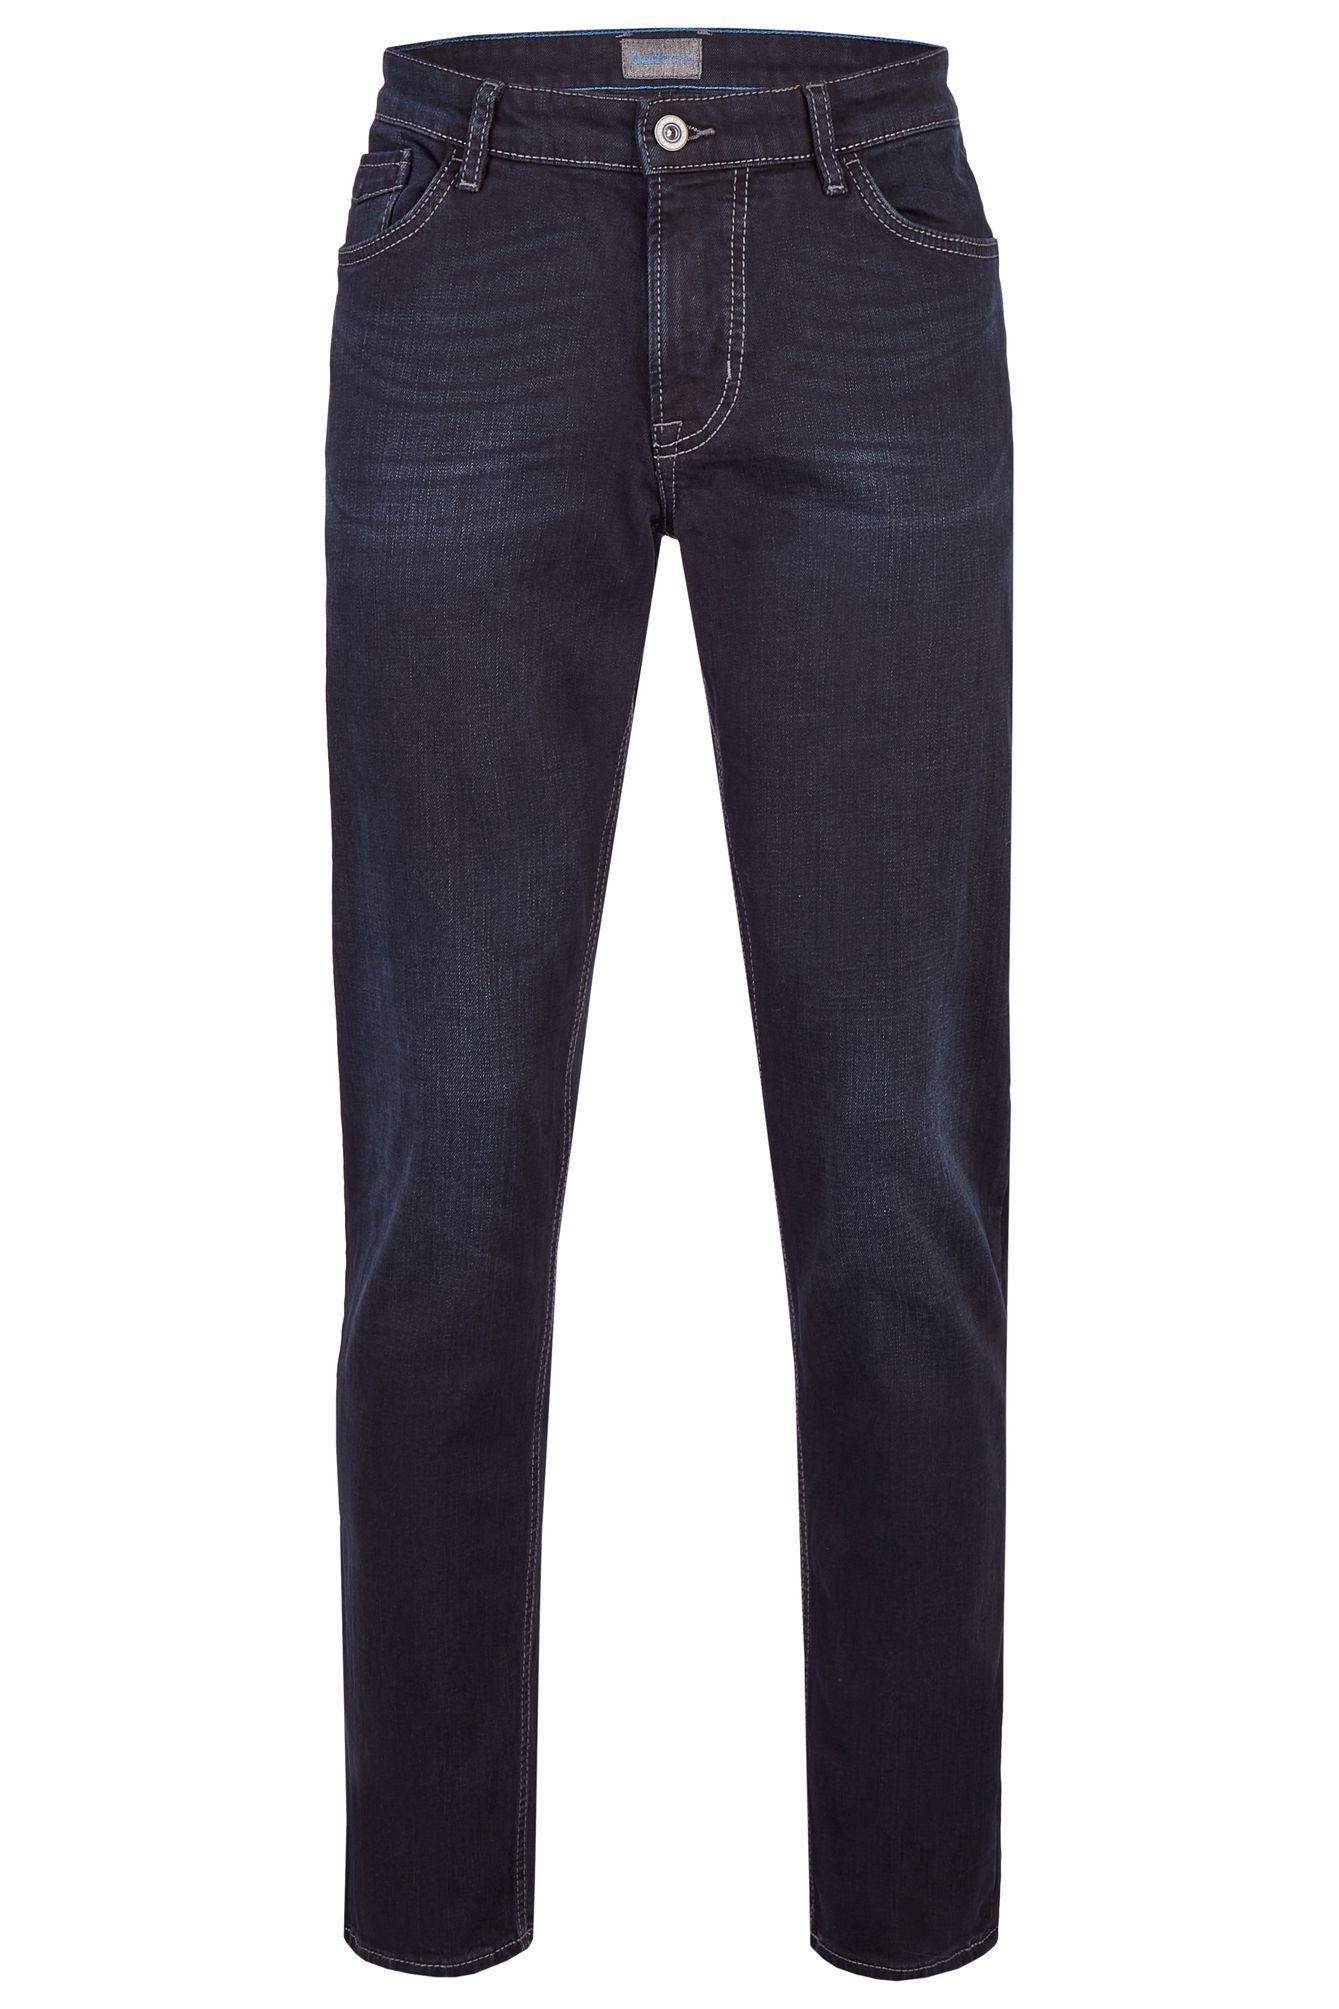 Hattric 5-Pocket-Jeans 688465-9285 black (89) blue